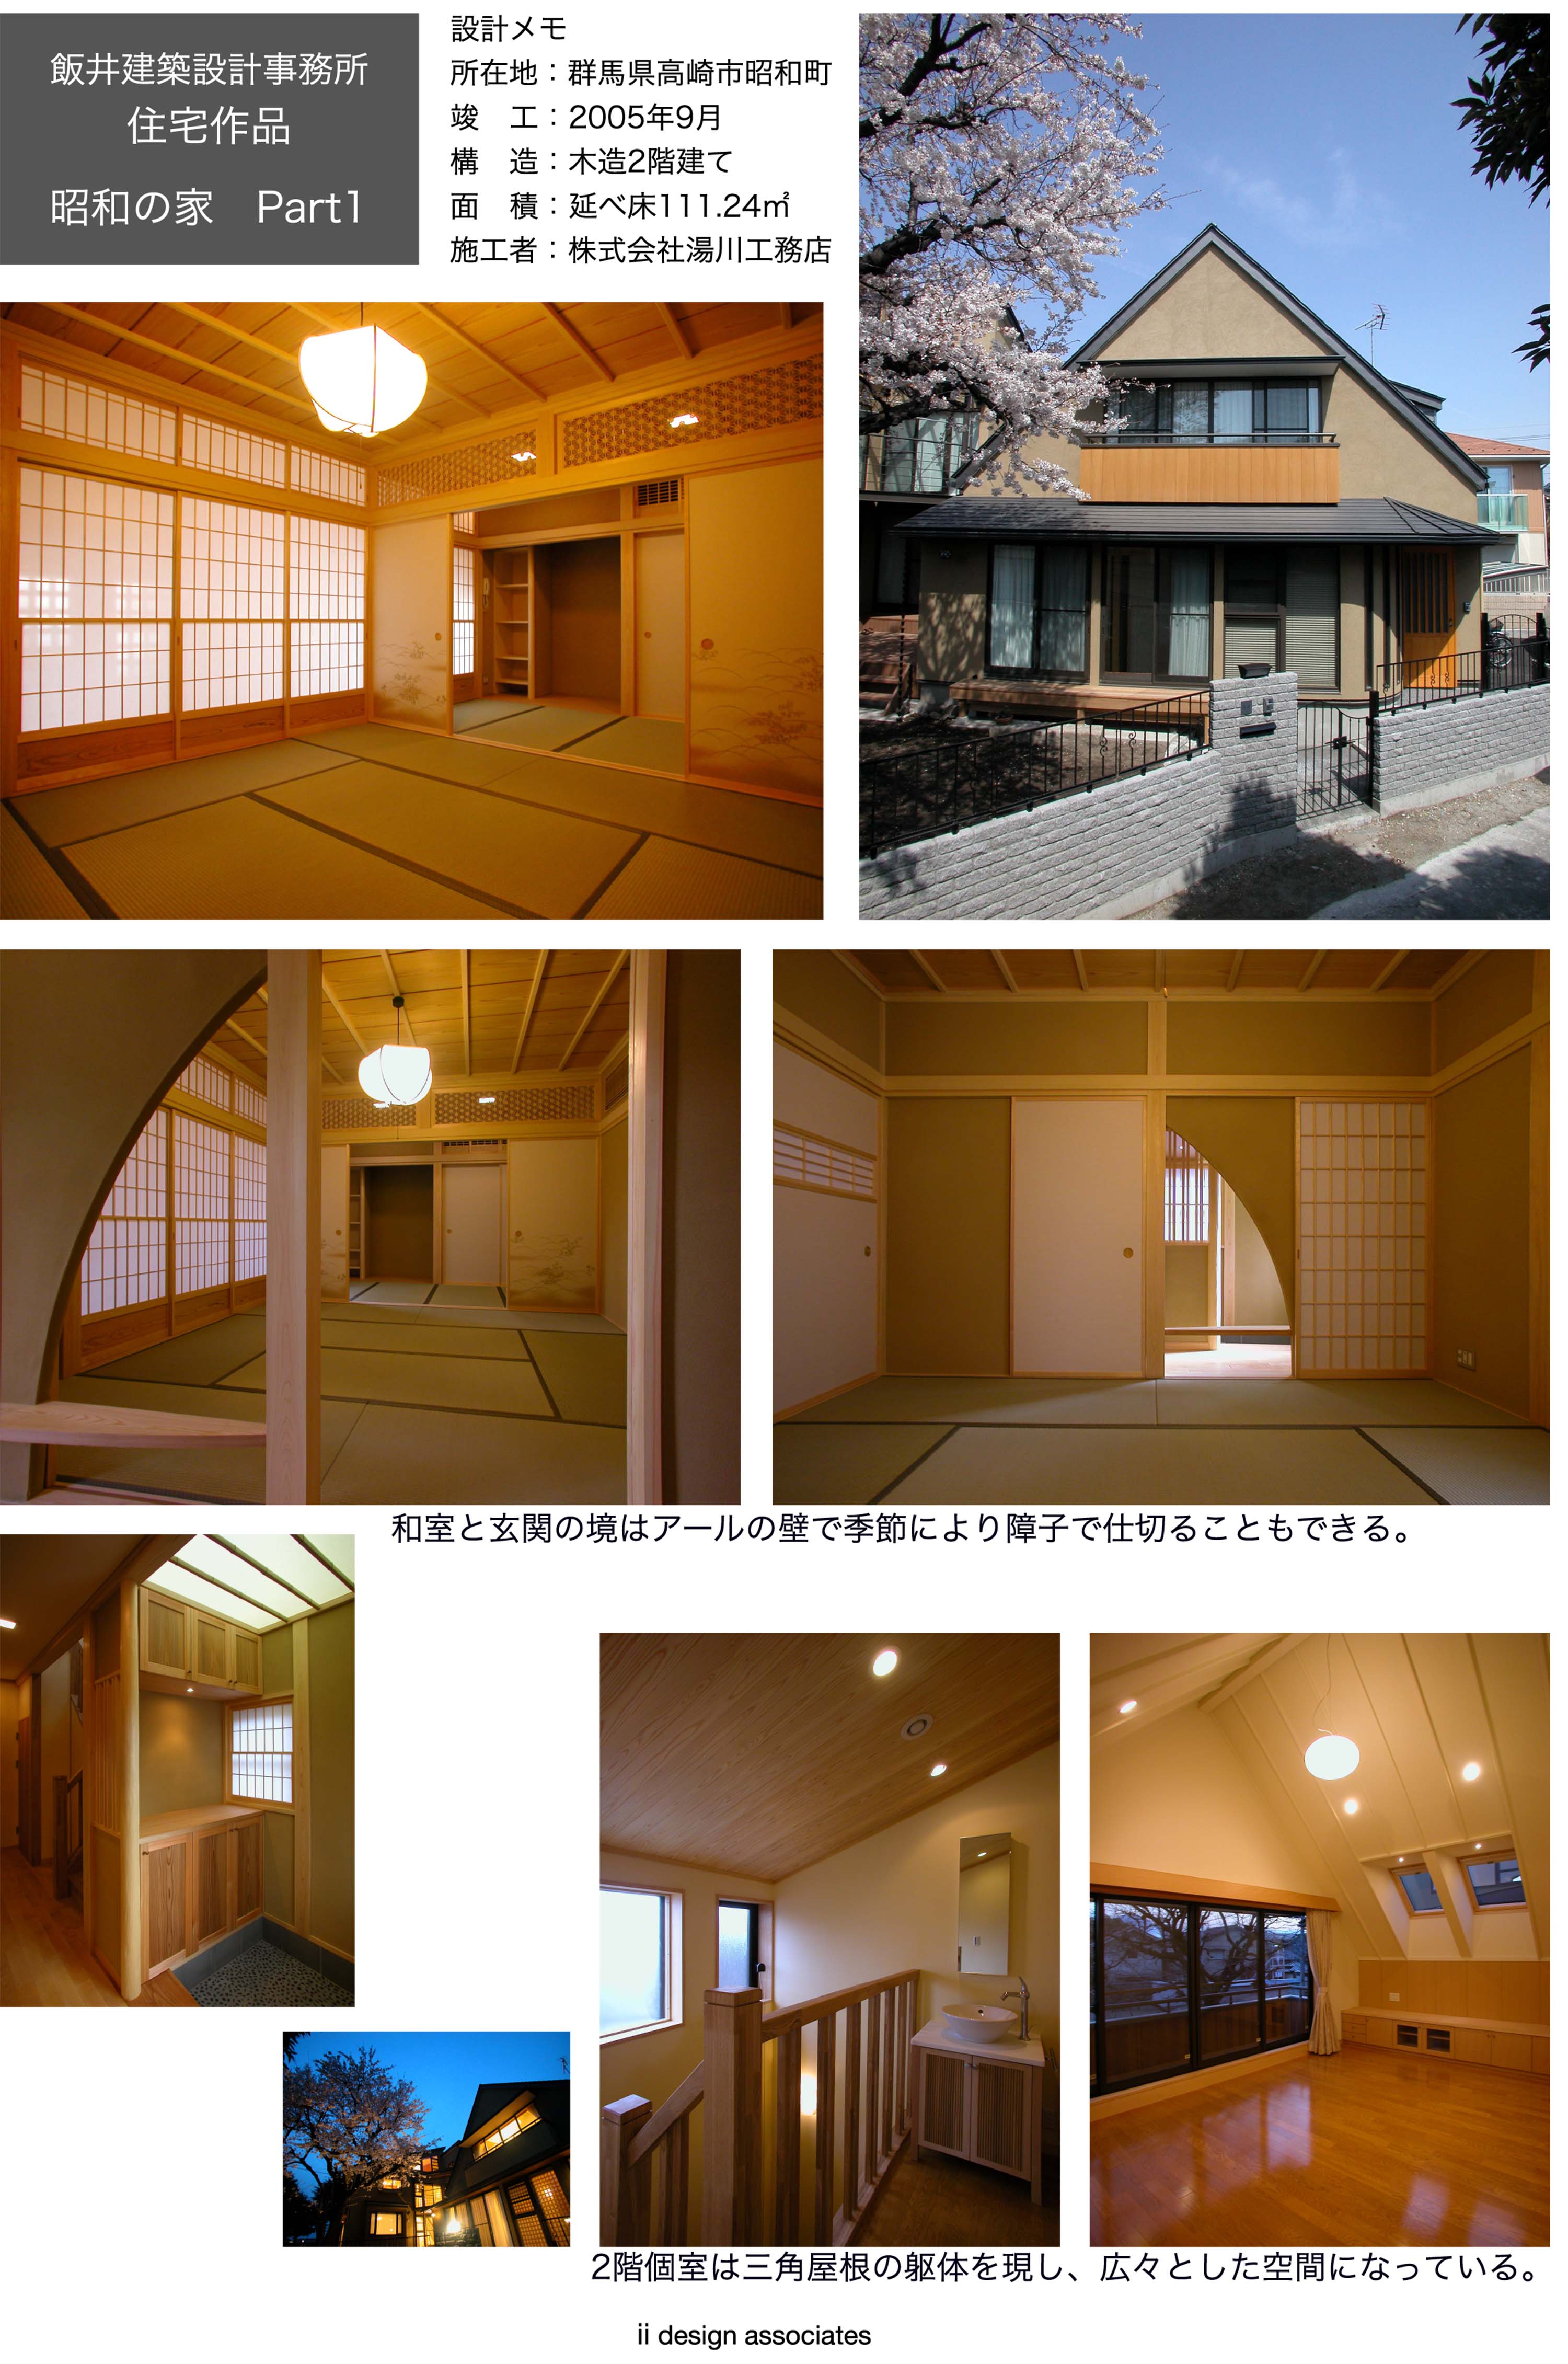 昭和の家 Part1